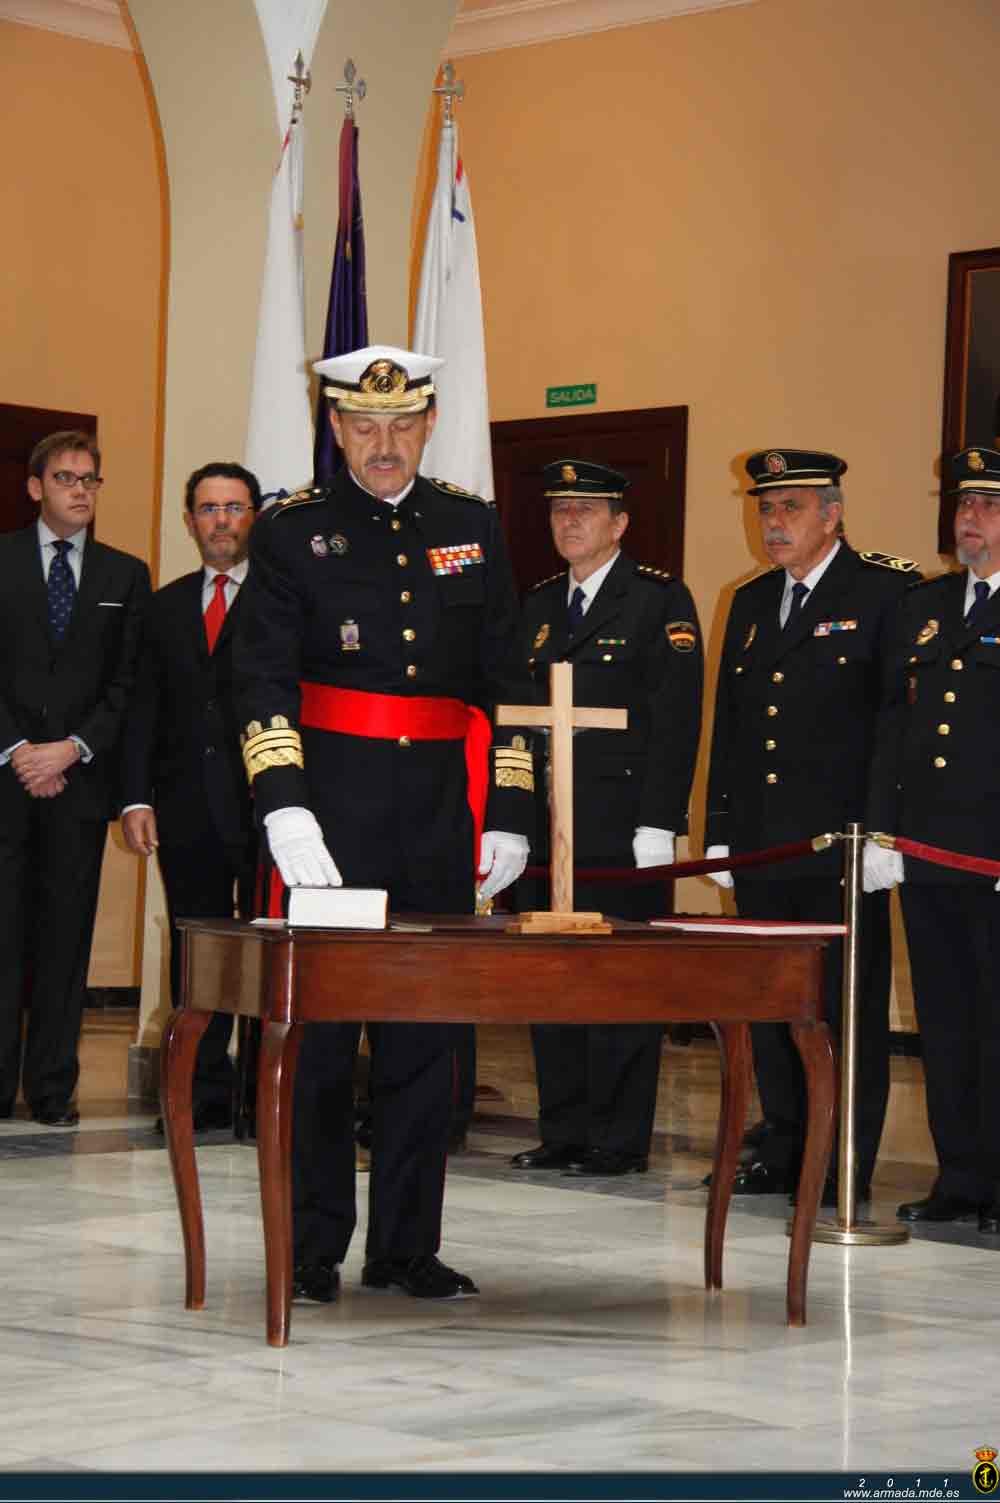 El general de división Pablo Bermudo y de Espinosa toma posesión como Comandante General de la Infantería de Marina